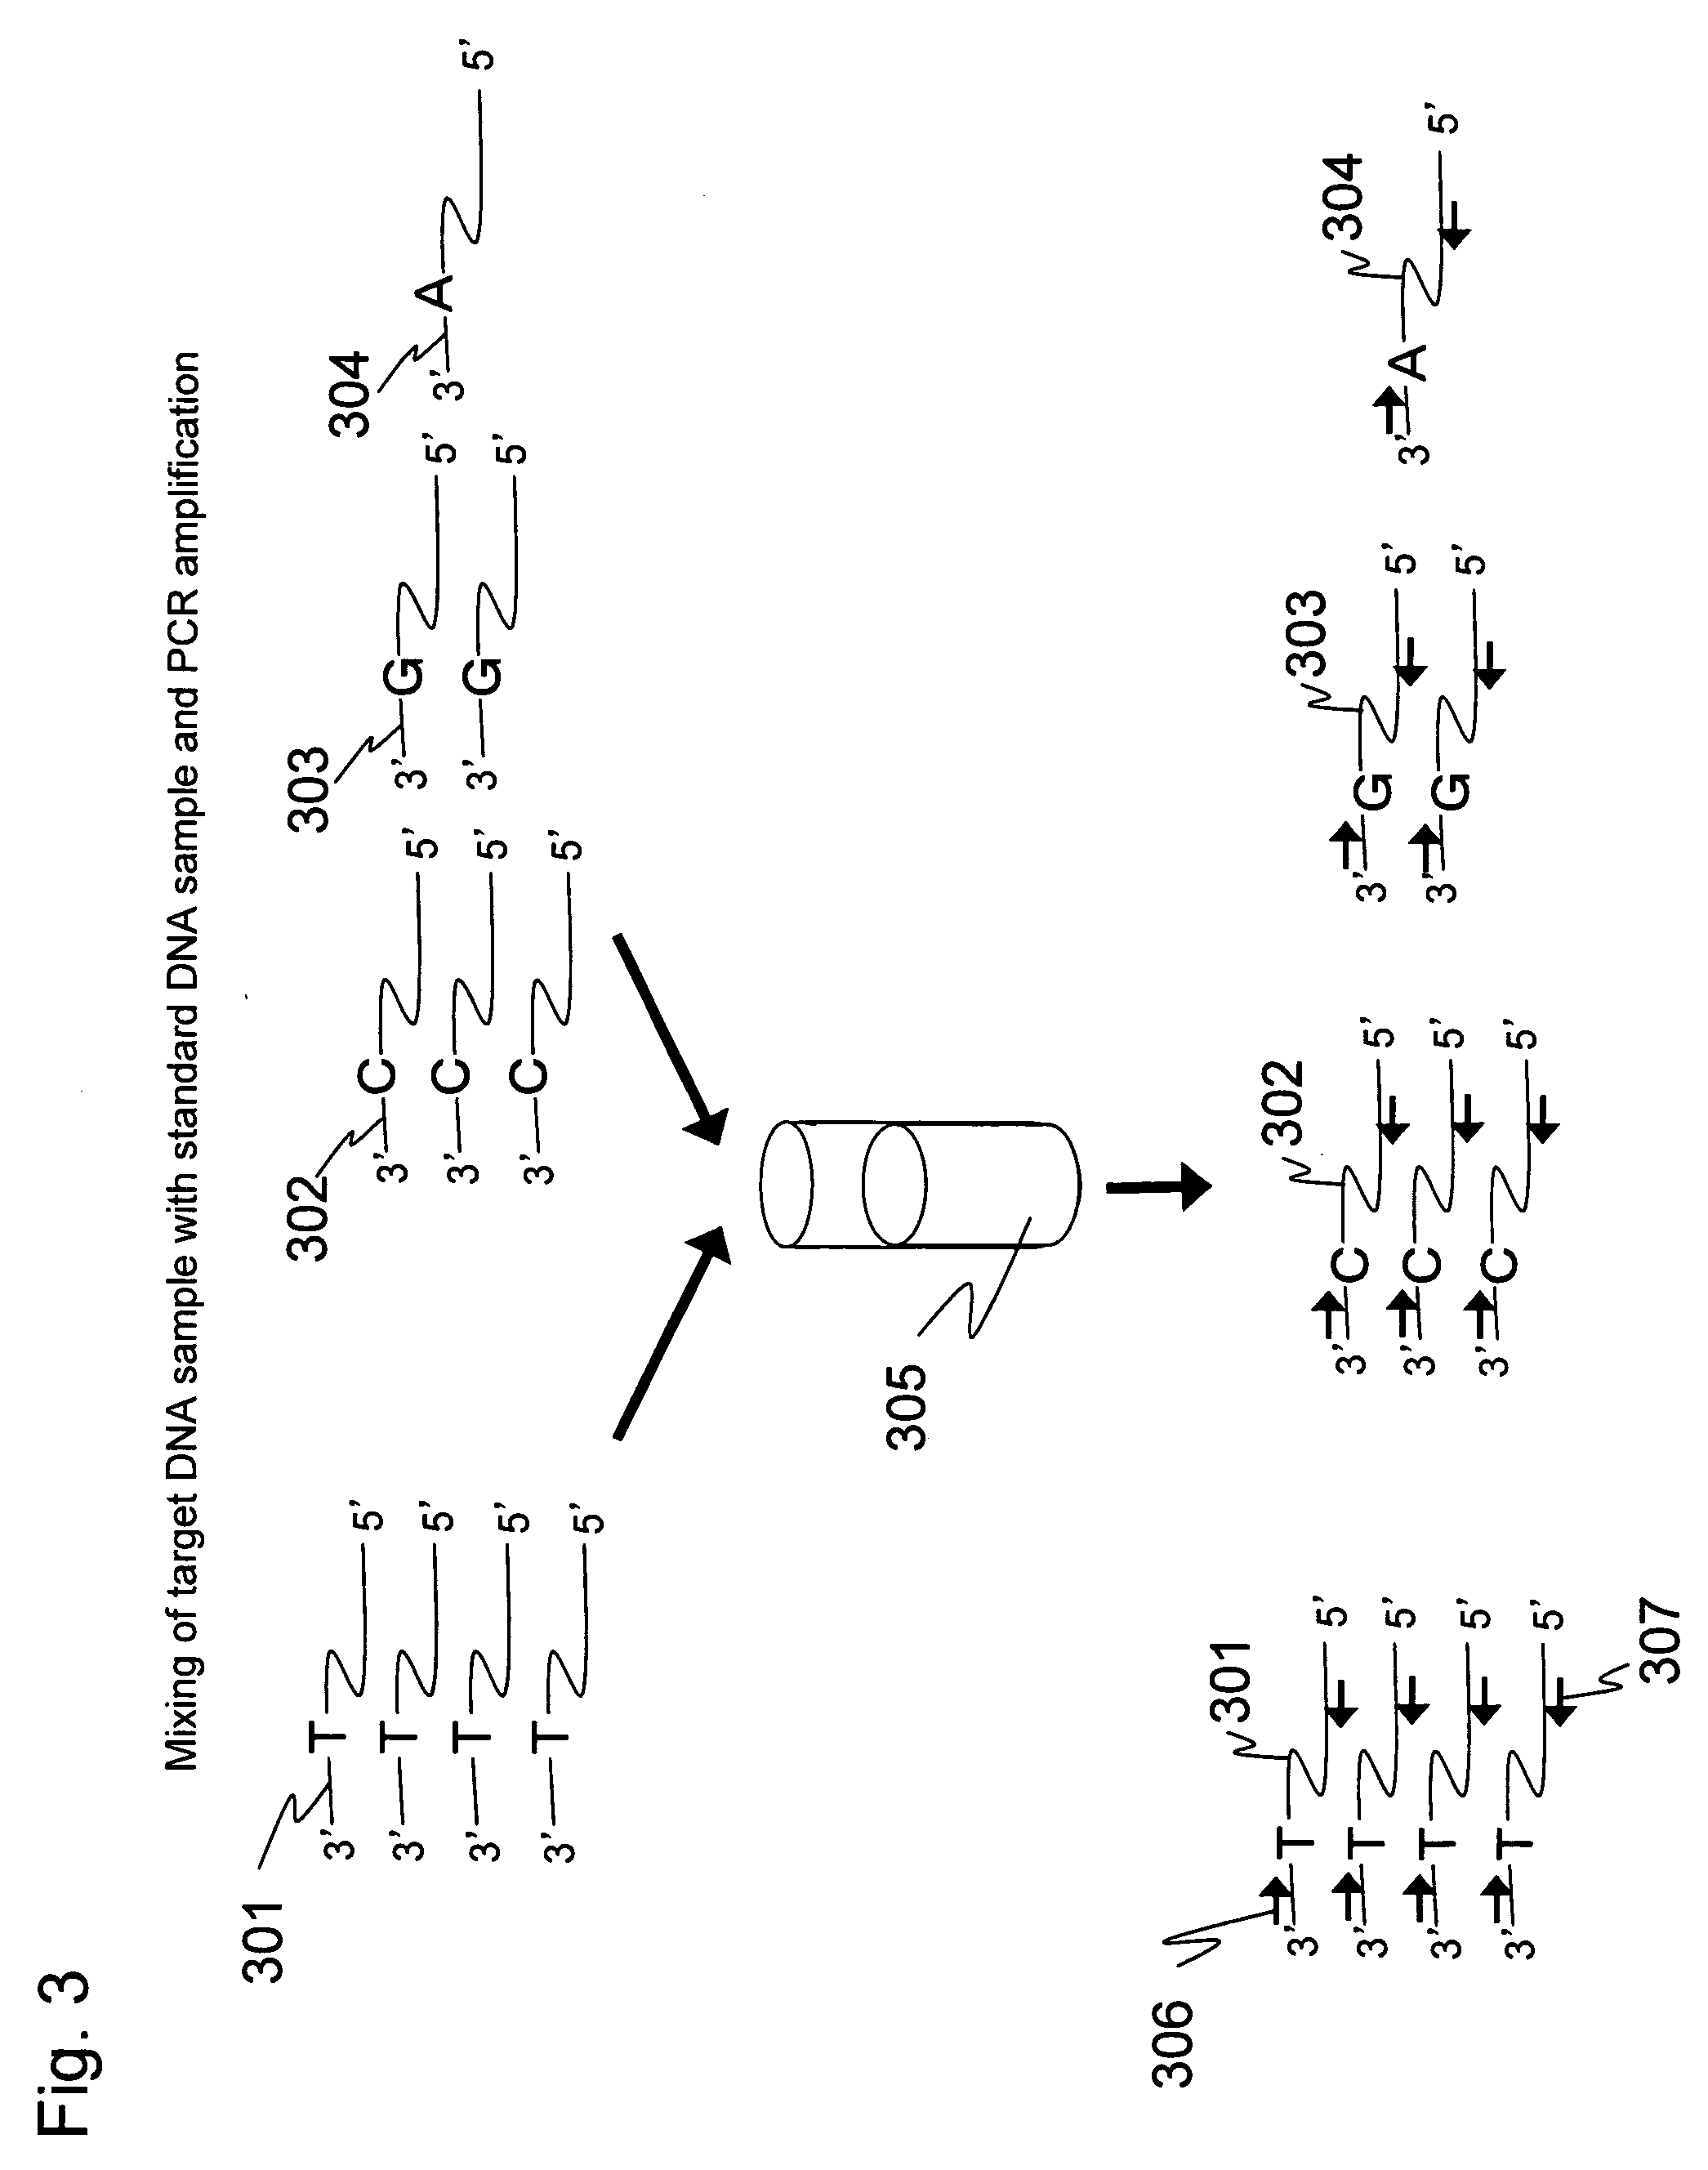 Method for nucleic acid quantitation